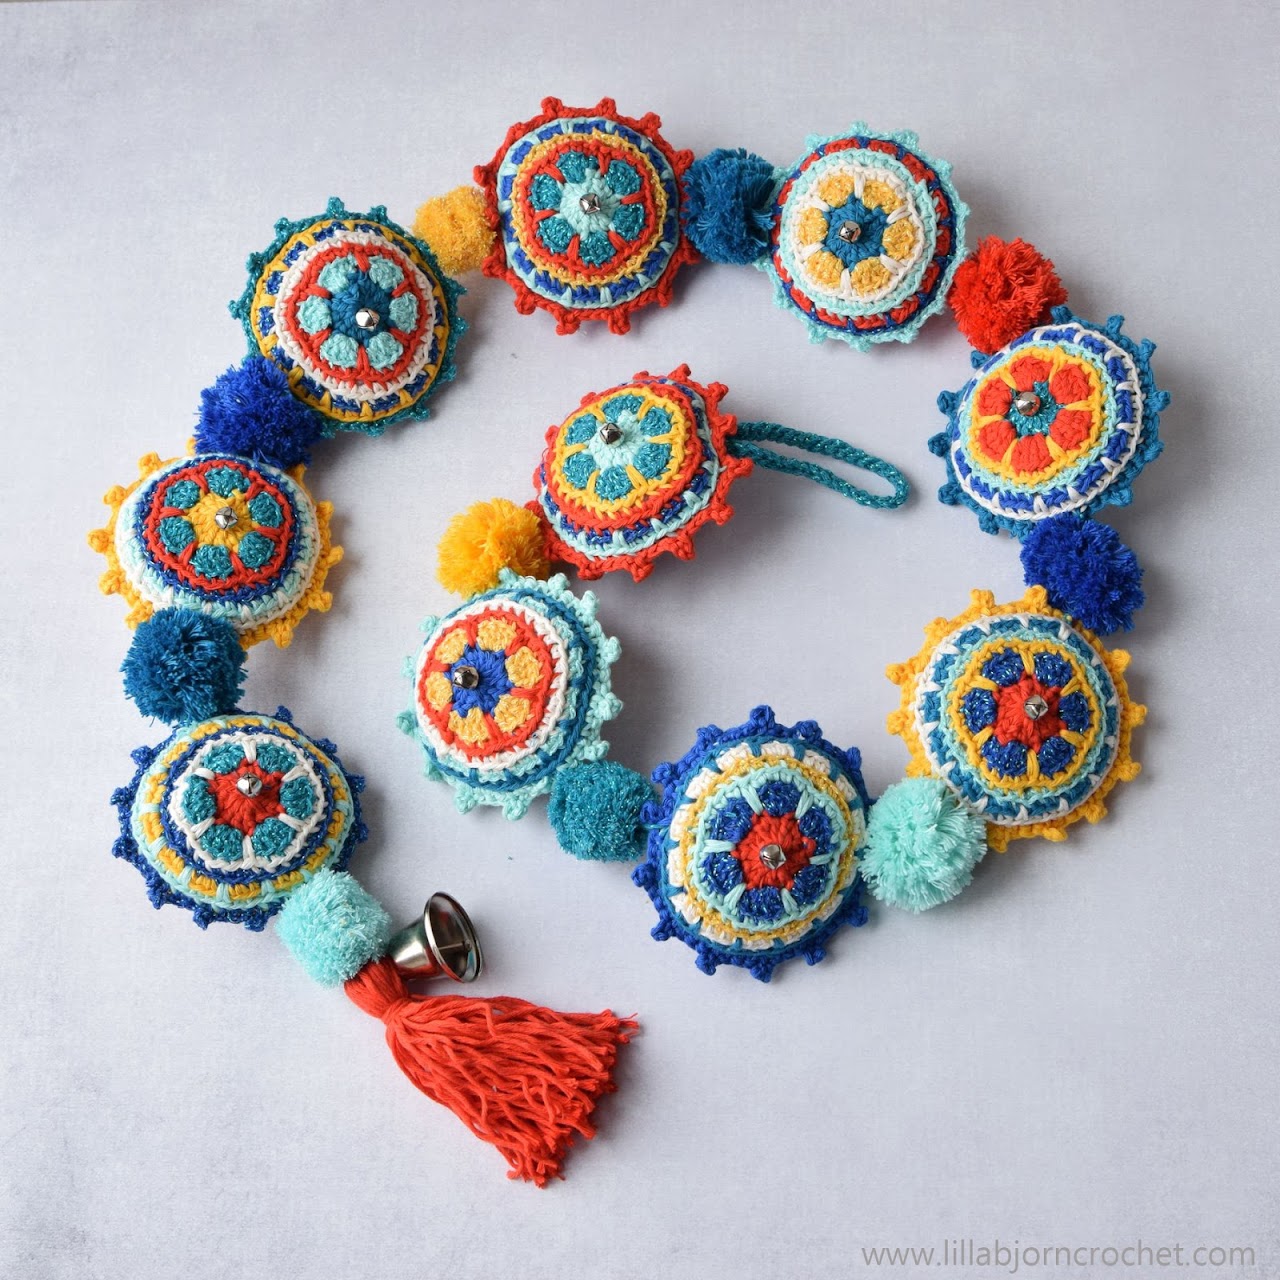 Jingle Garland - crochet pattern by www.lillabjorncrochet.com